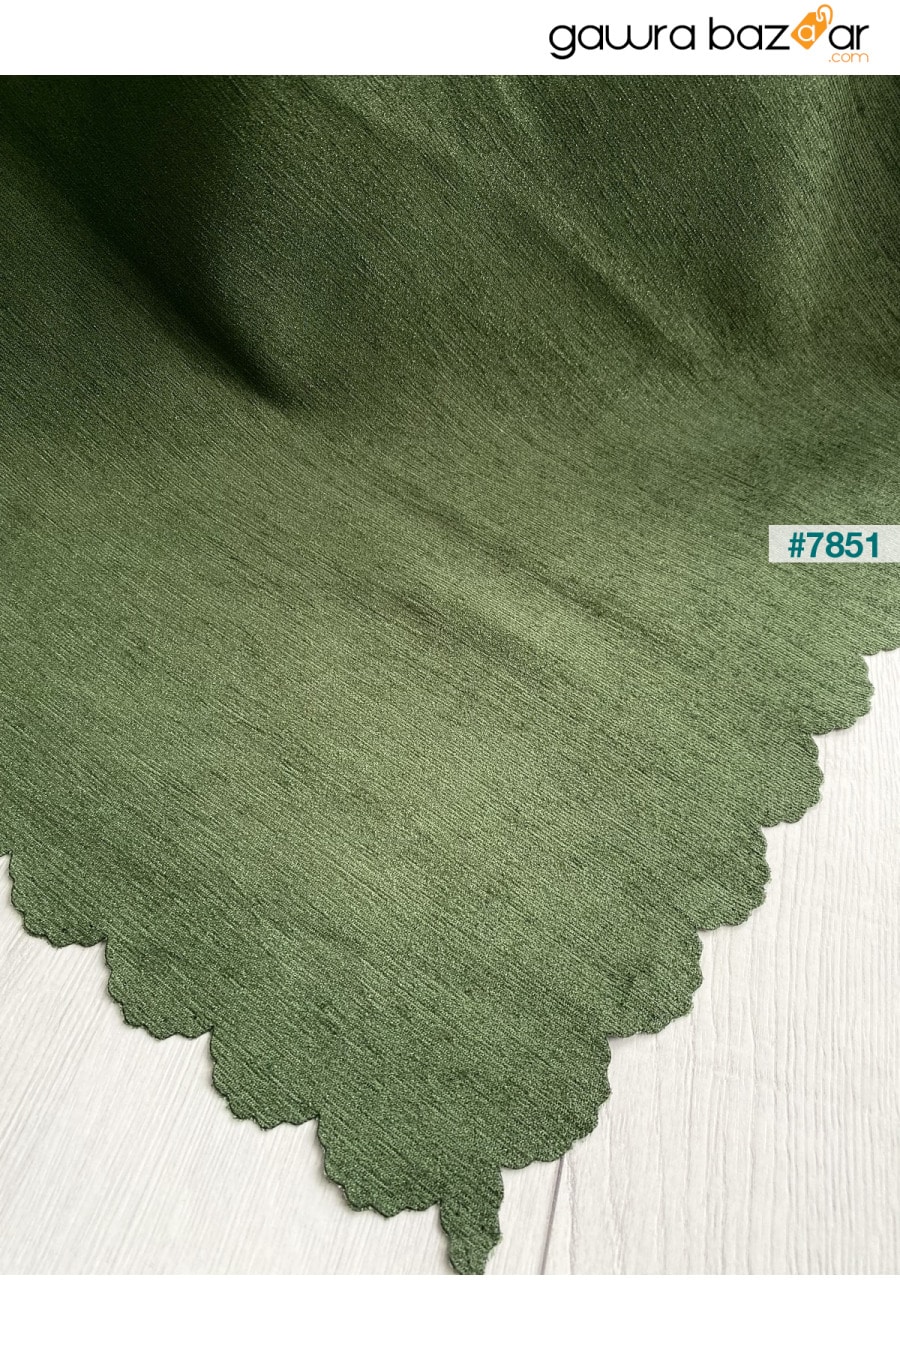 غطاء أريكة شينيل مزدوج الوجهين باللون الأخضر من Nefti غطاء أريكة سرير رمي Koçhan Manifatura 1